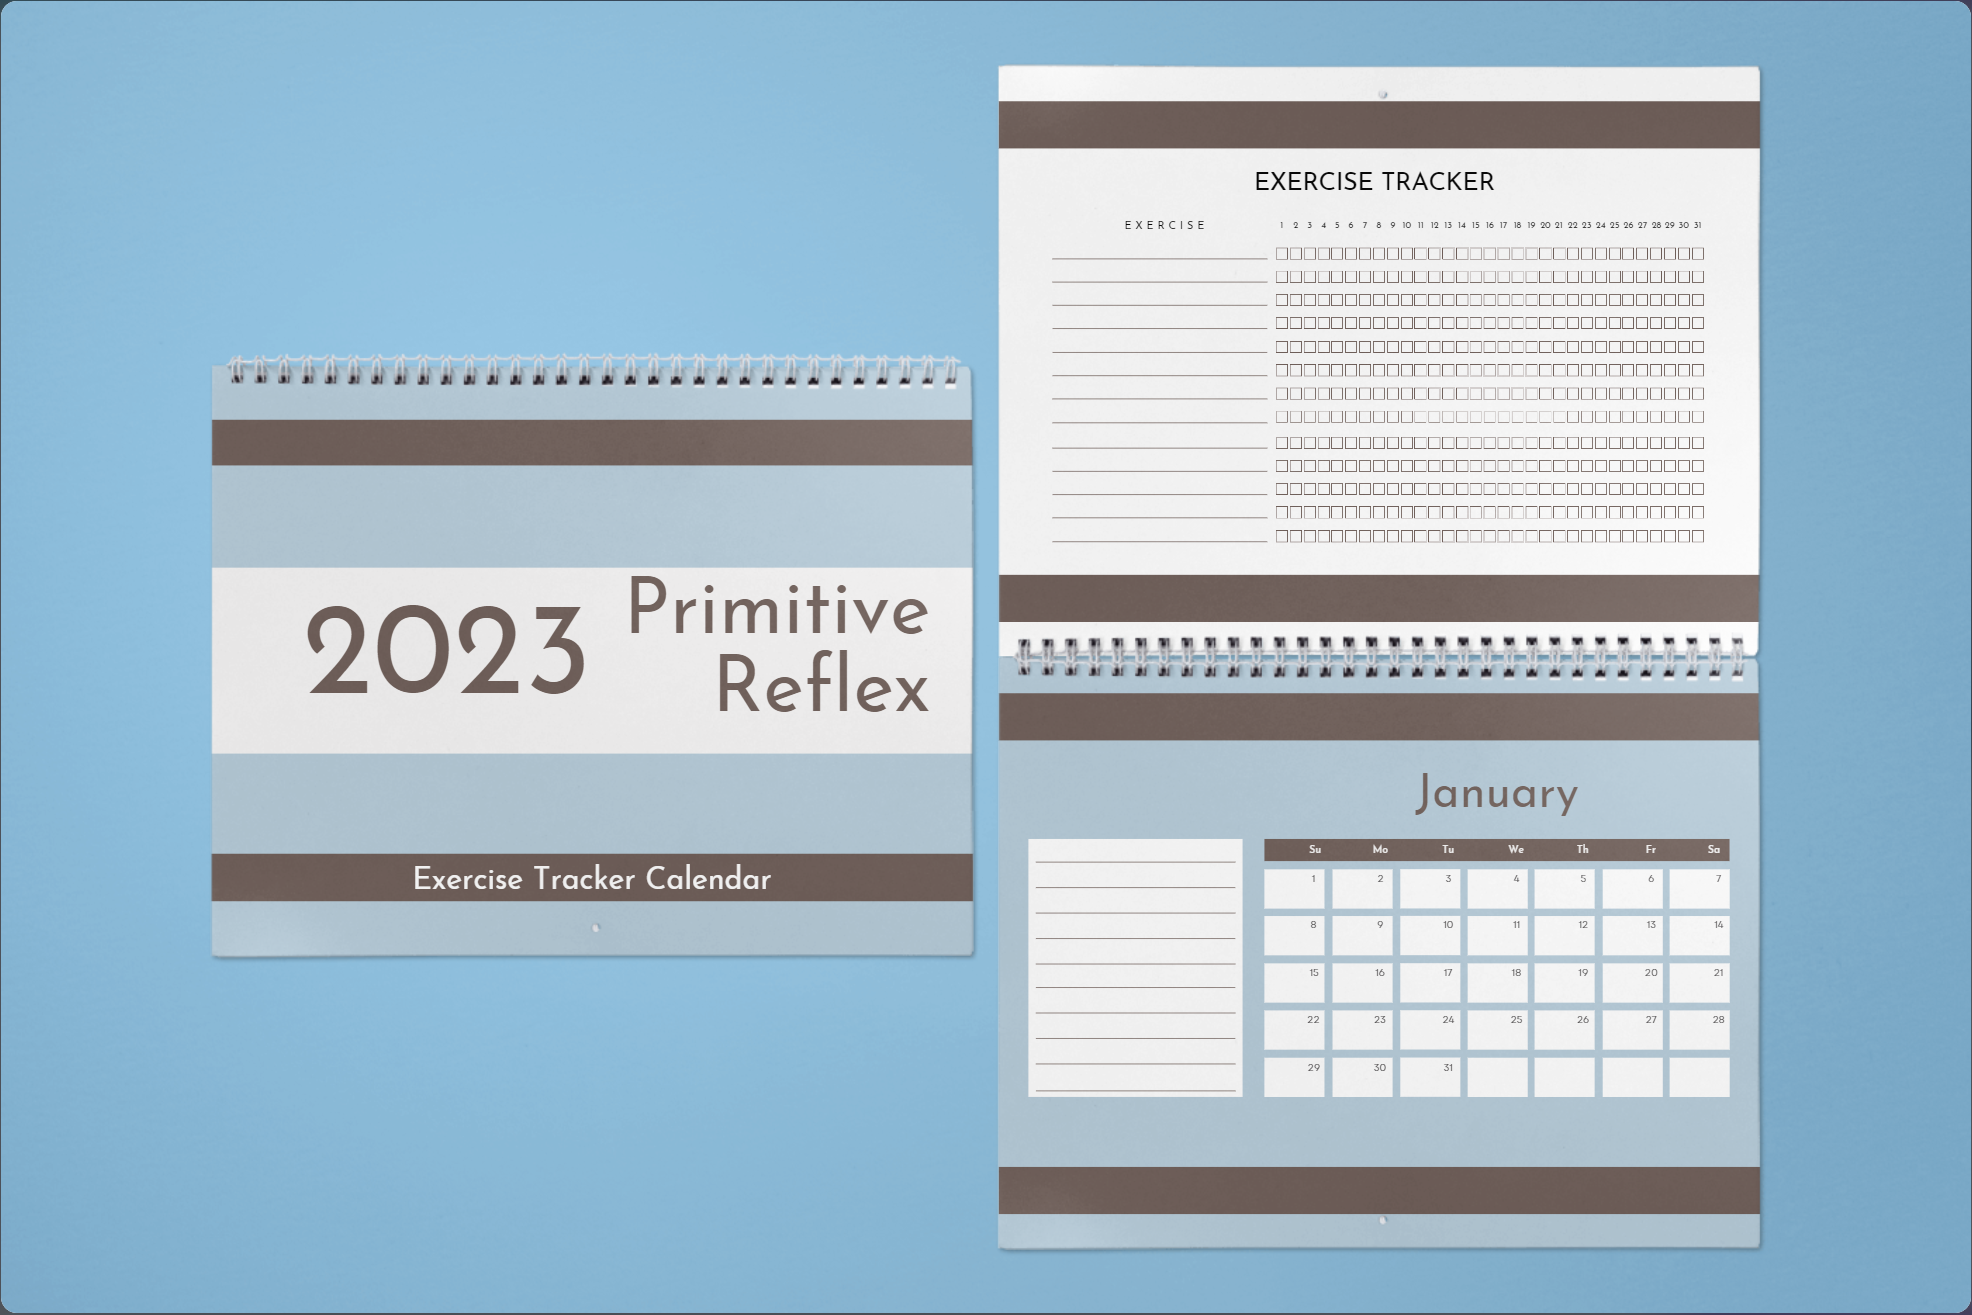 2023 Primitive Reflexes Calendar